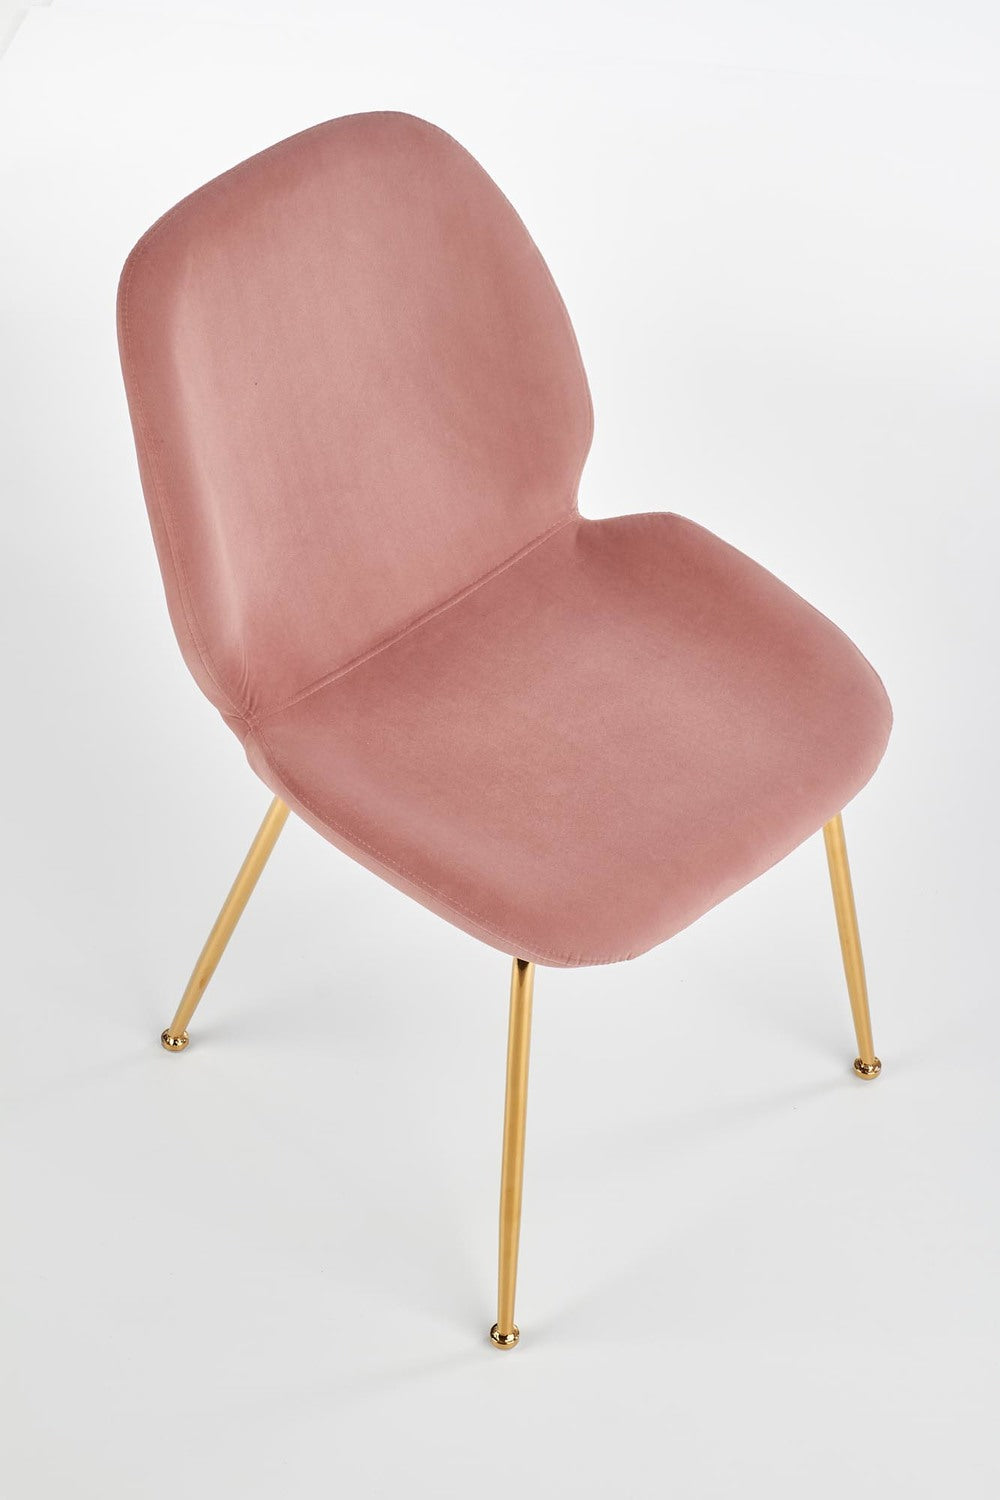 Stuhl in rosé und gold mit Sitzschale